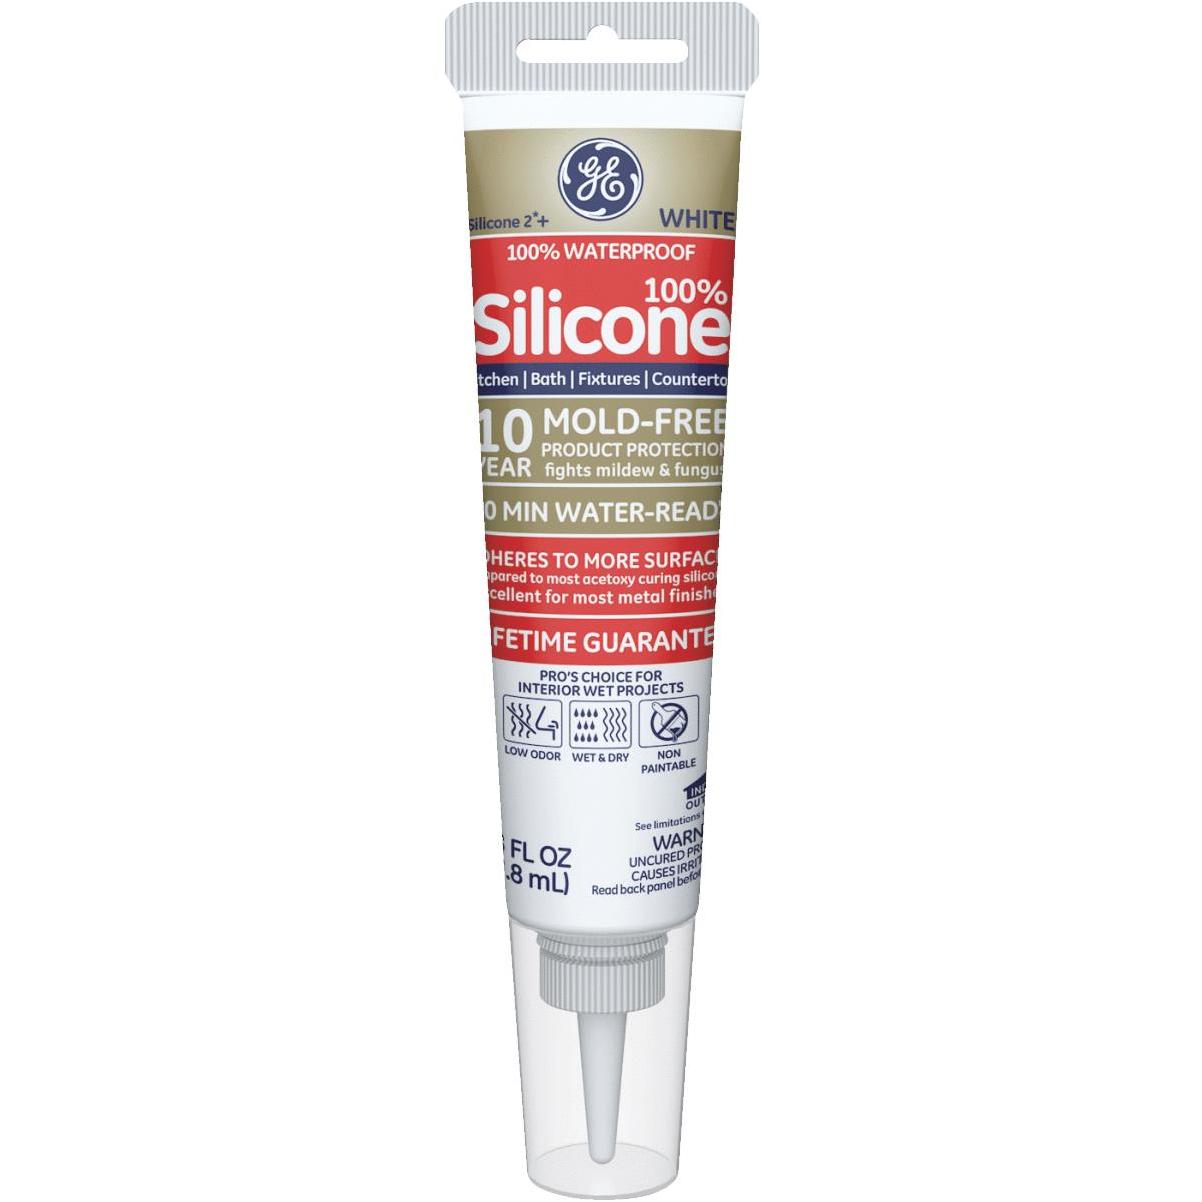 SILIX Classic Trout liquid silicone 1l